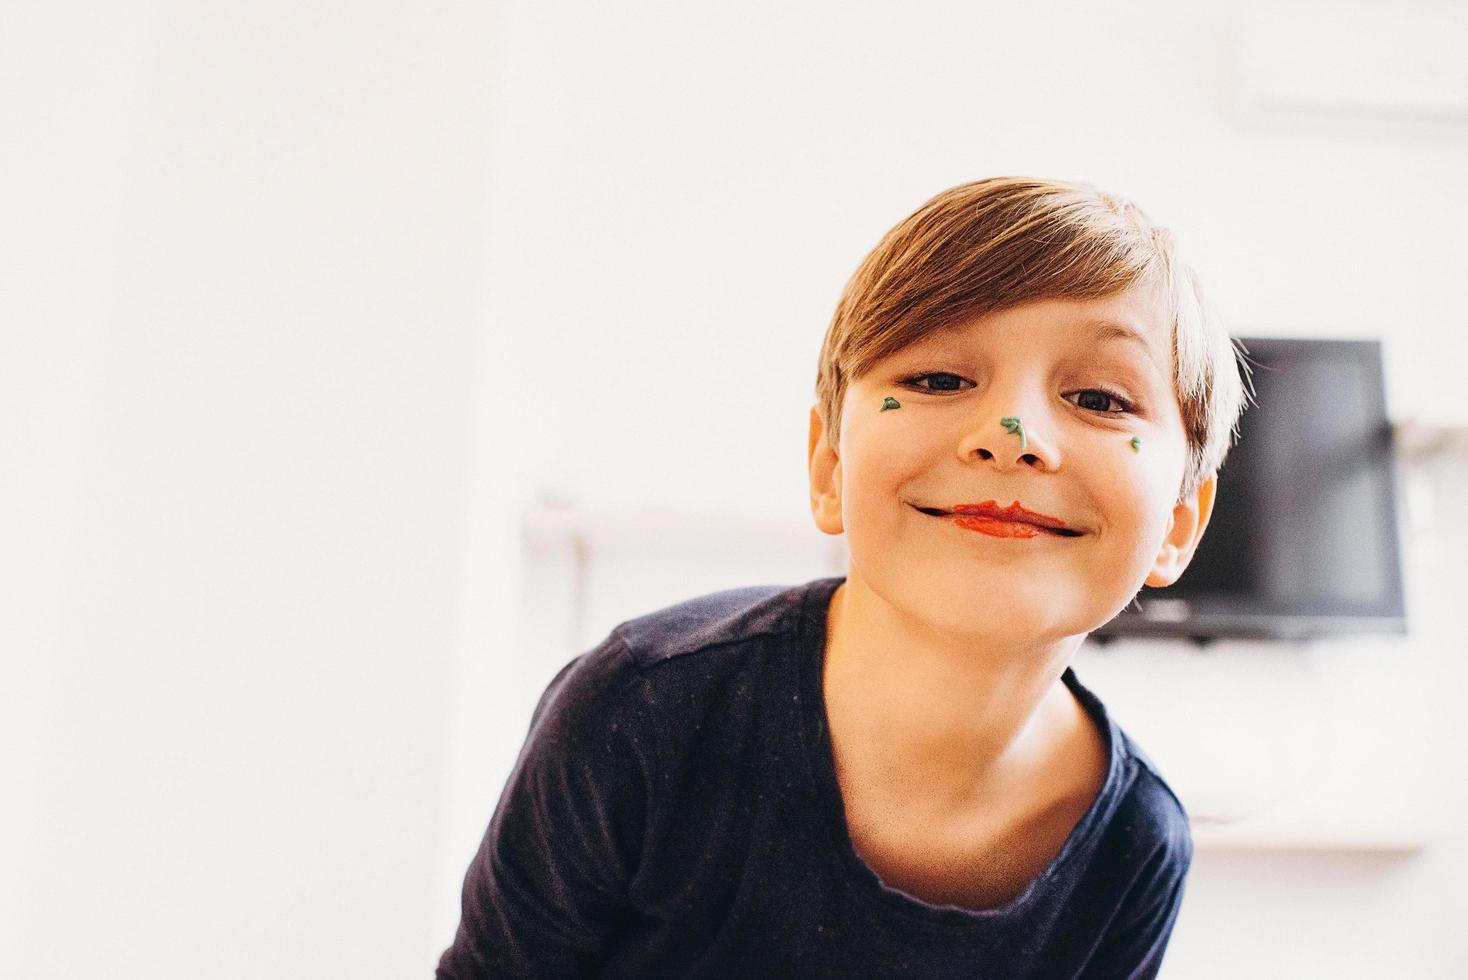 menino bonito com um rosto pintado de palhaço, sorrindo foto